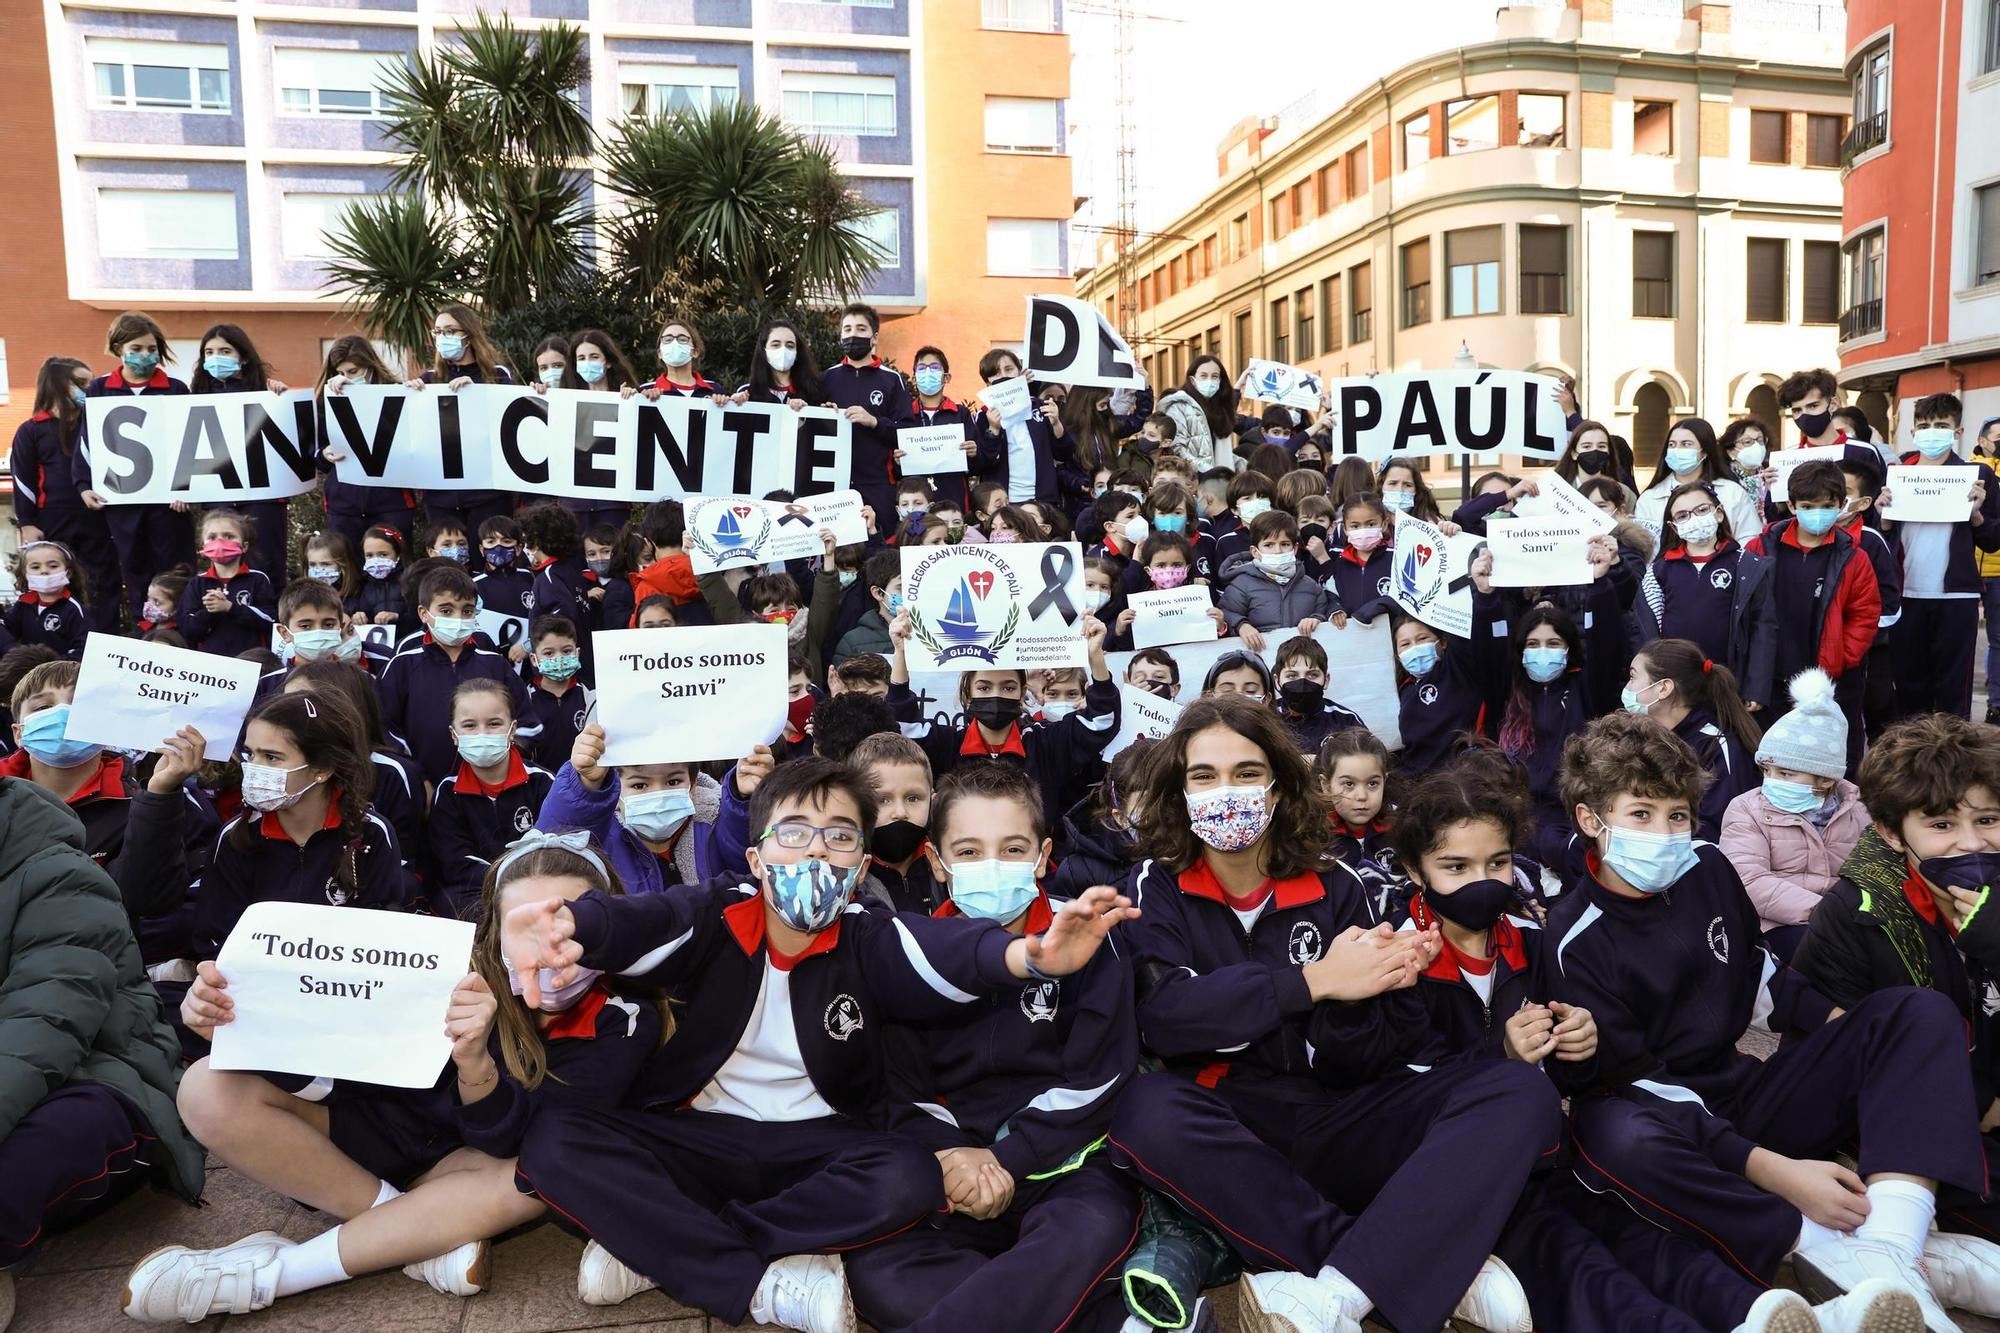 La concentración de profesores, alumnos y familias del San Vicente, en imágenes